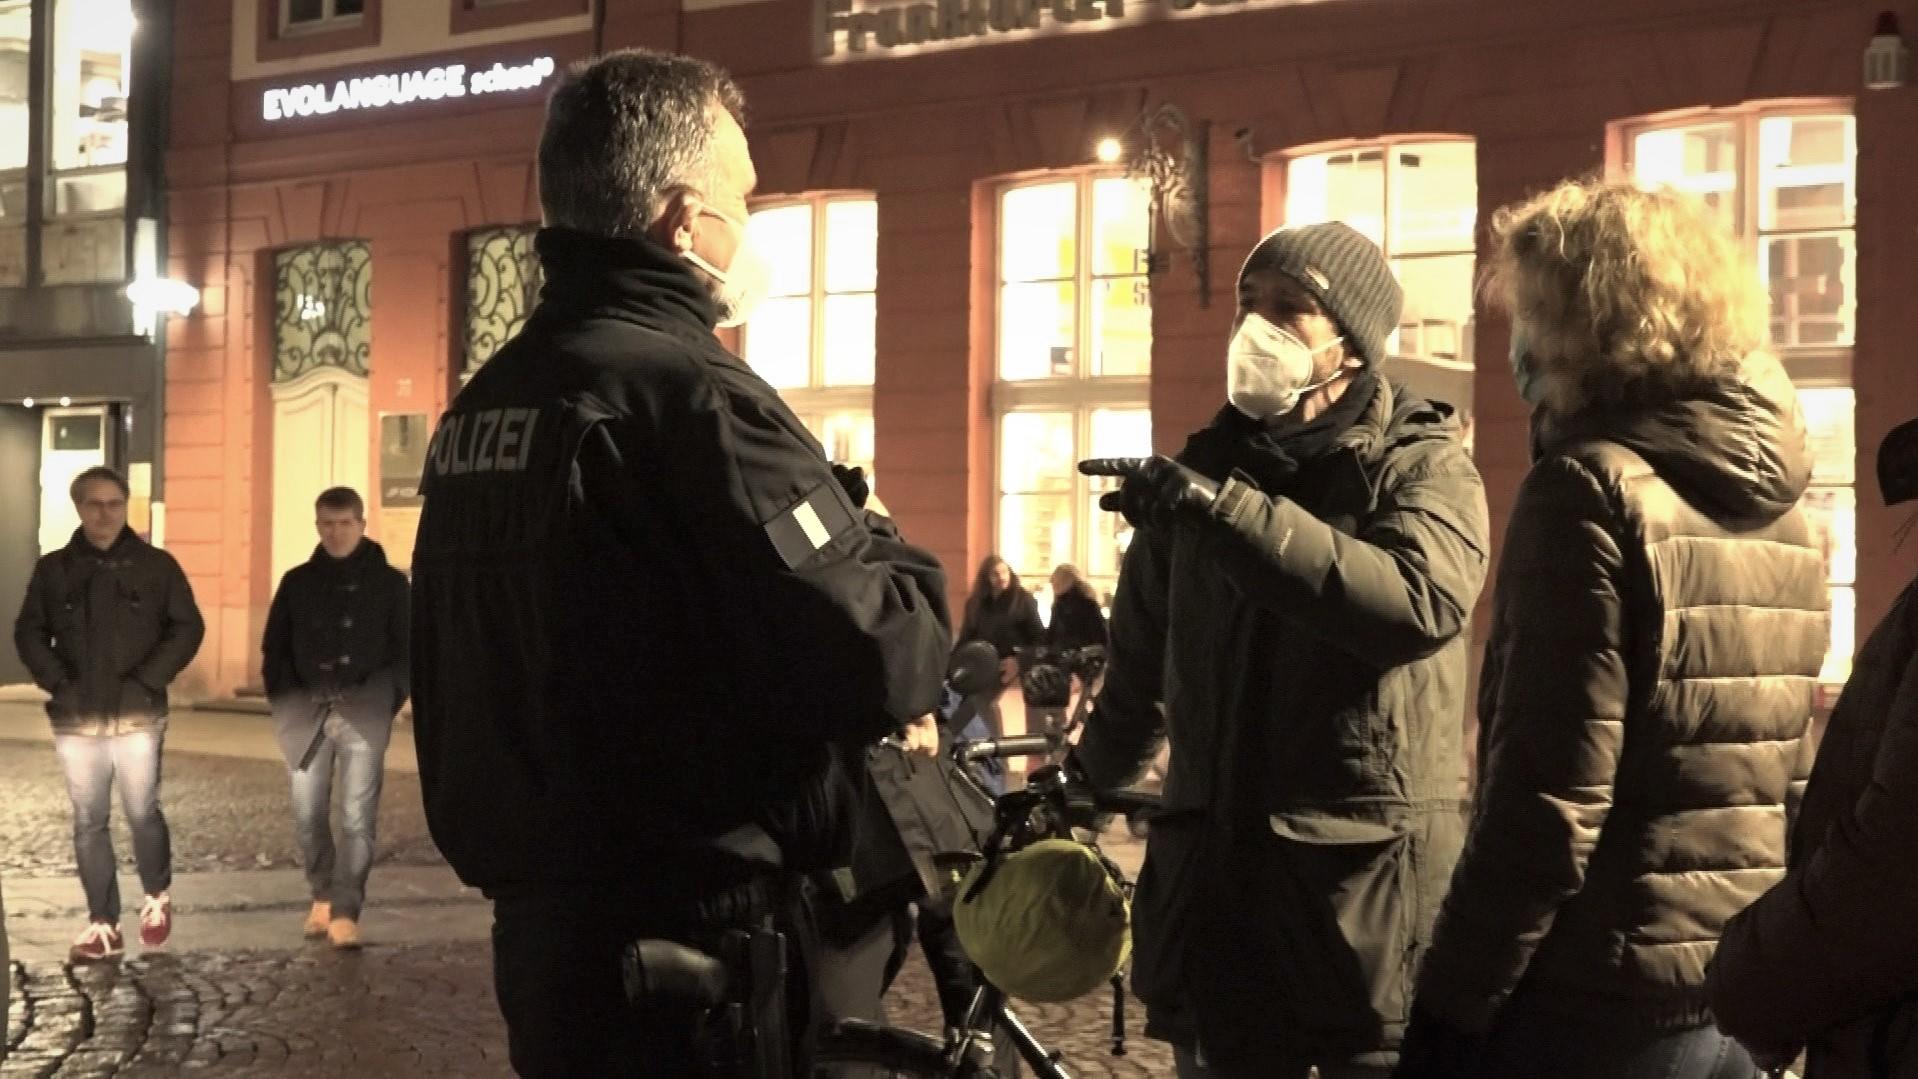 Diskussion mit "Spaziergängern": Ein Polizist im Gespräch mit Demonstranten in Frankfurt.